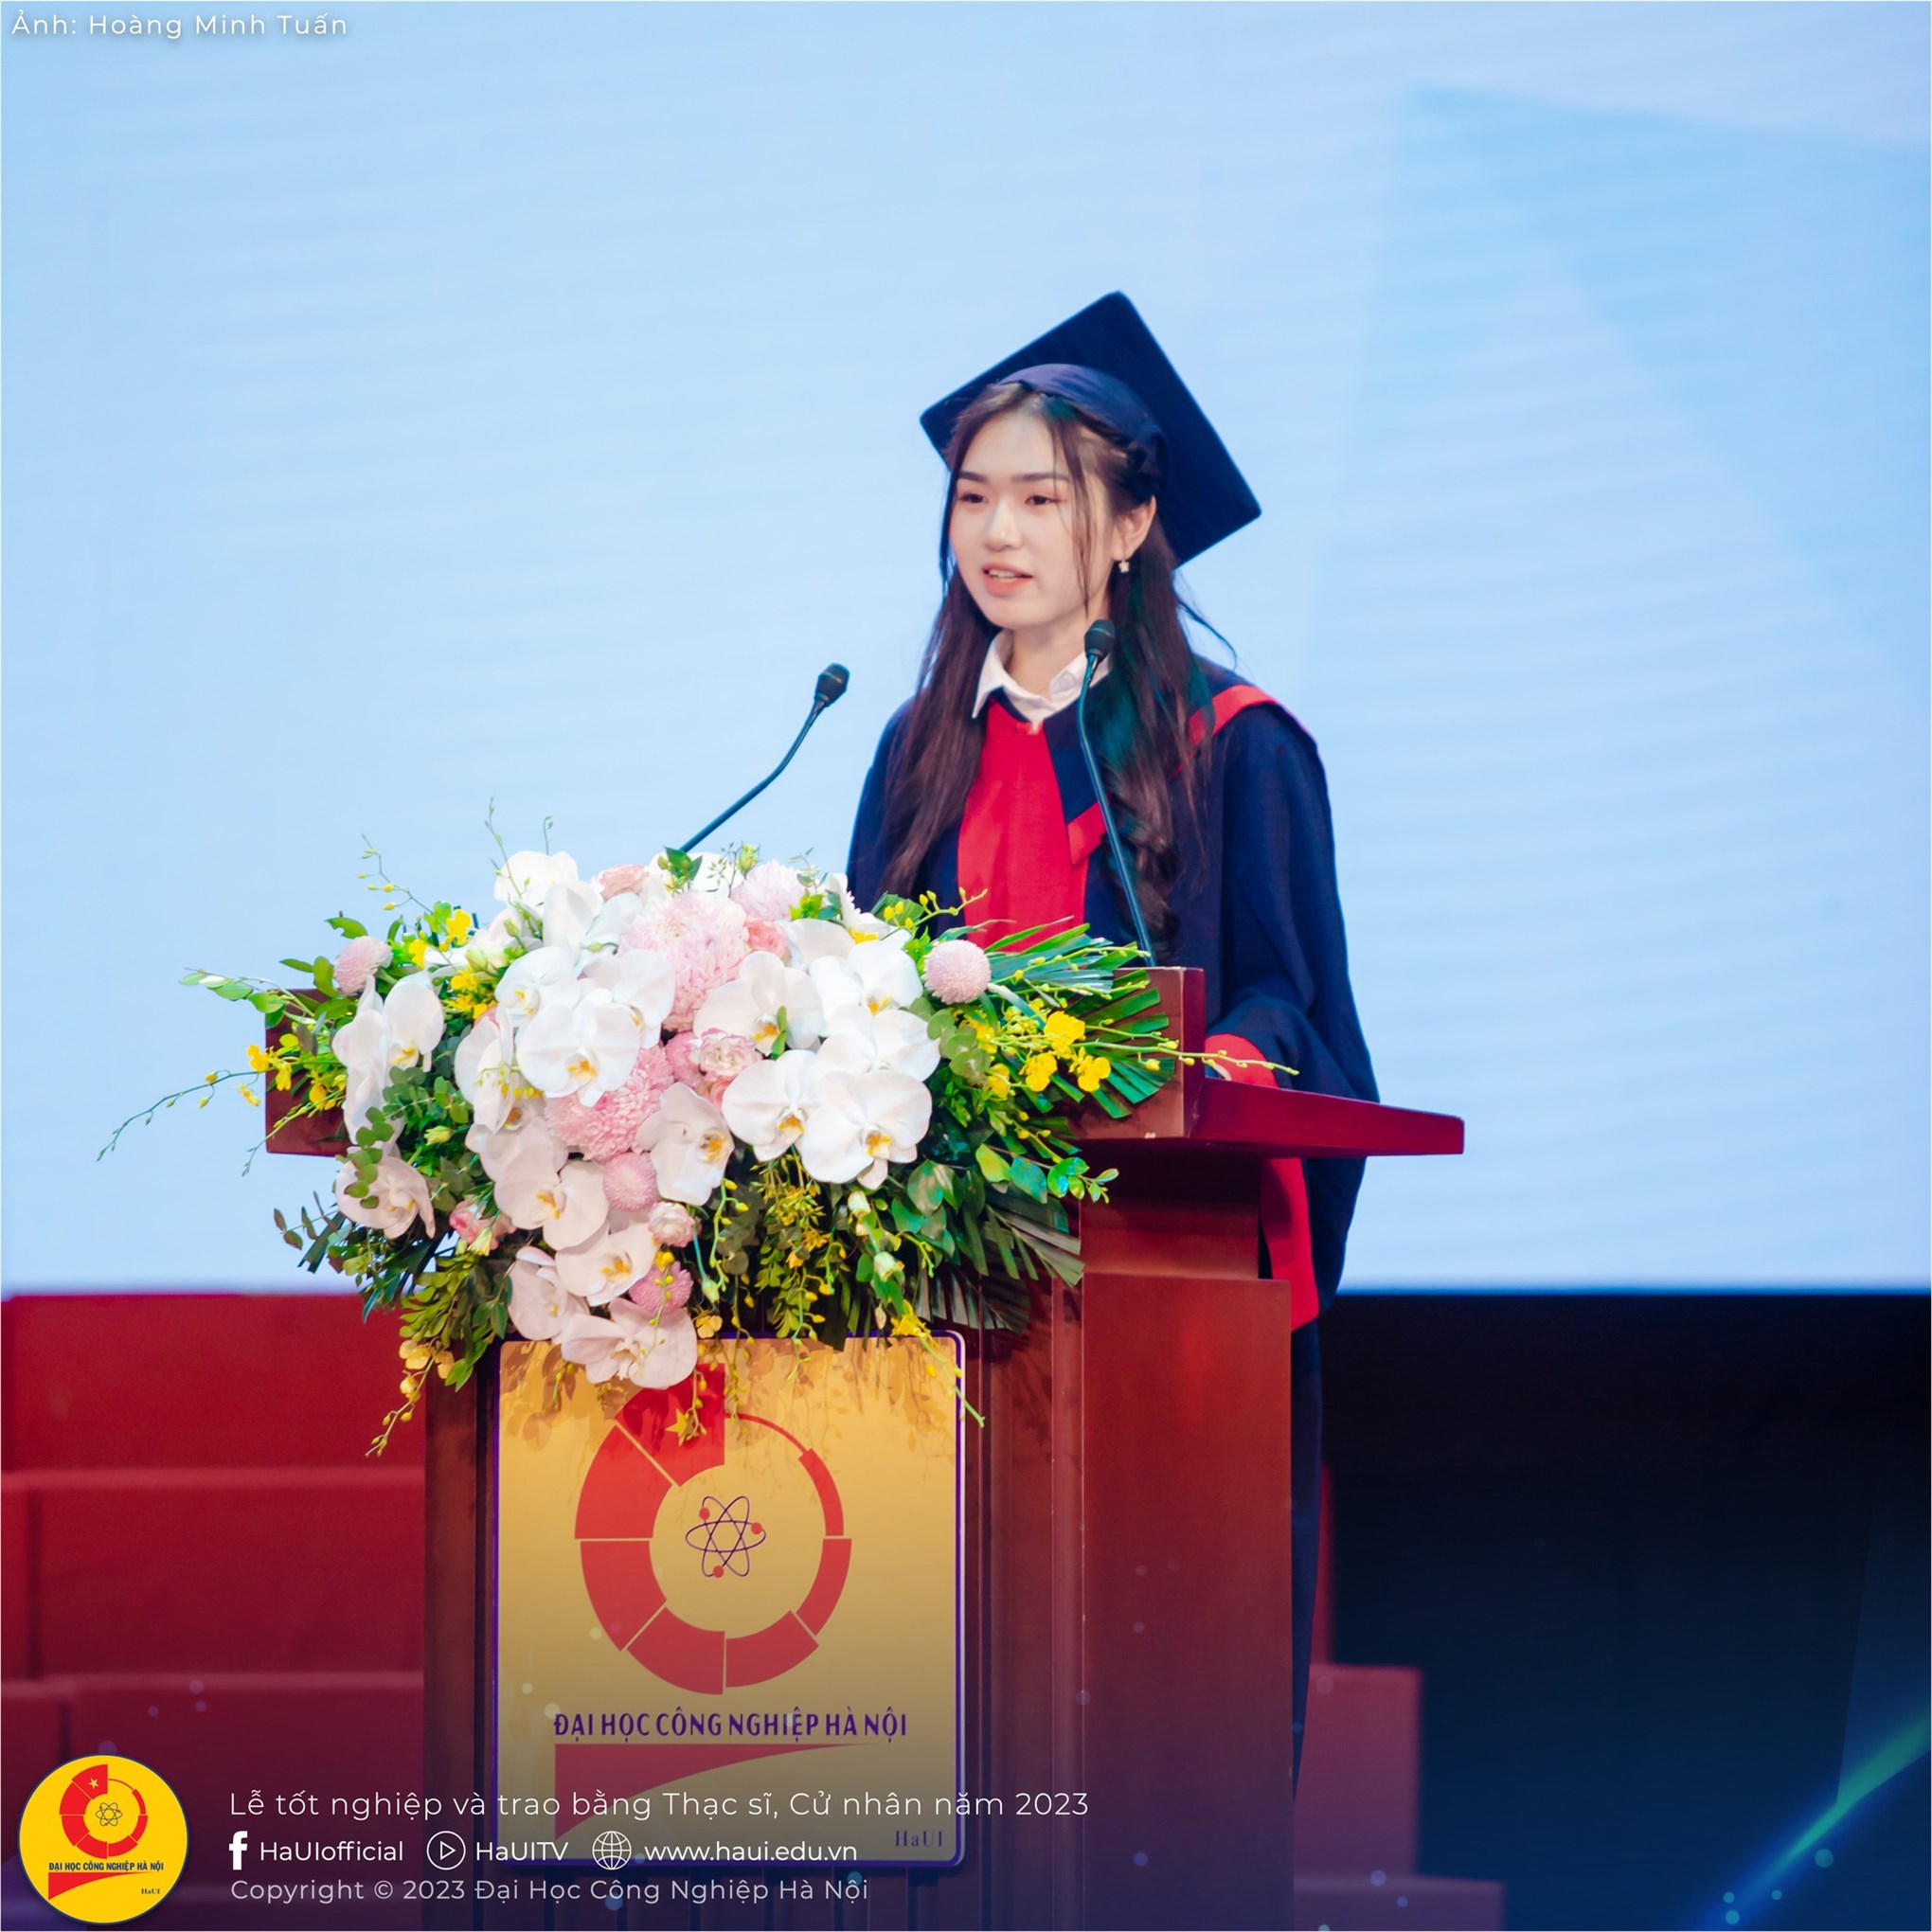 Trường ĐH Công nghiệp Hà Nội tổ chức lễ tốt nghiệp năm 2023: Xúc động và tự hào!!!